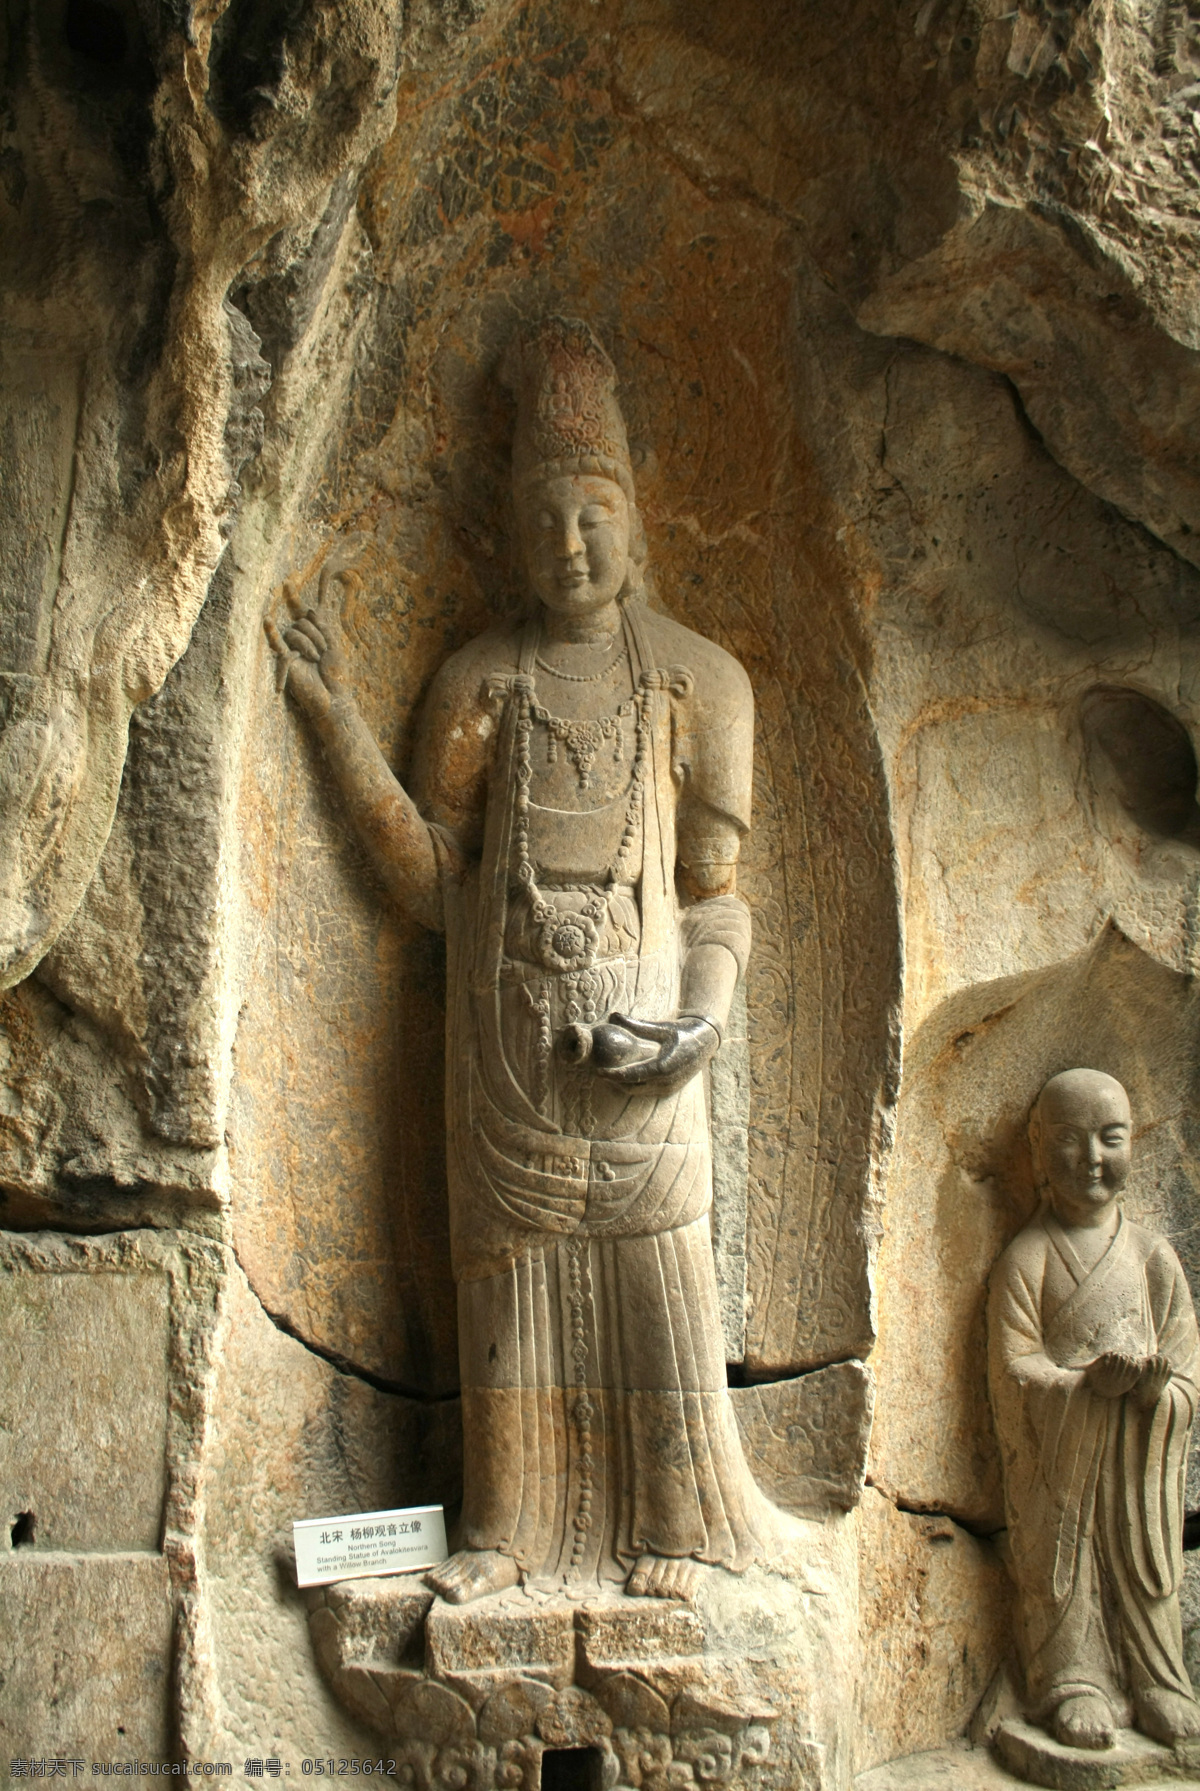 观世音 菩萨 传统文化 佛教文化 佛像 观世音菩萨 文化艺术 宗教信仰 宗教艺术 石像 玉净瓶